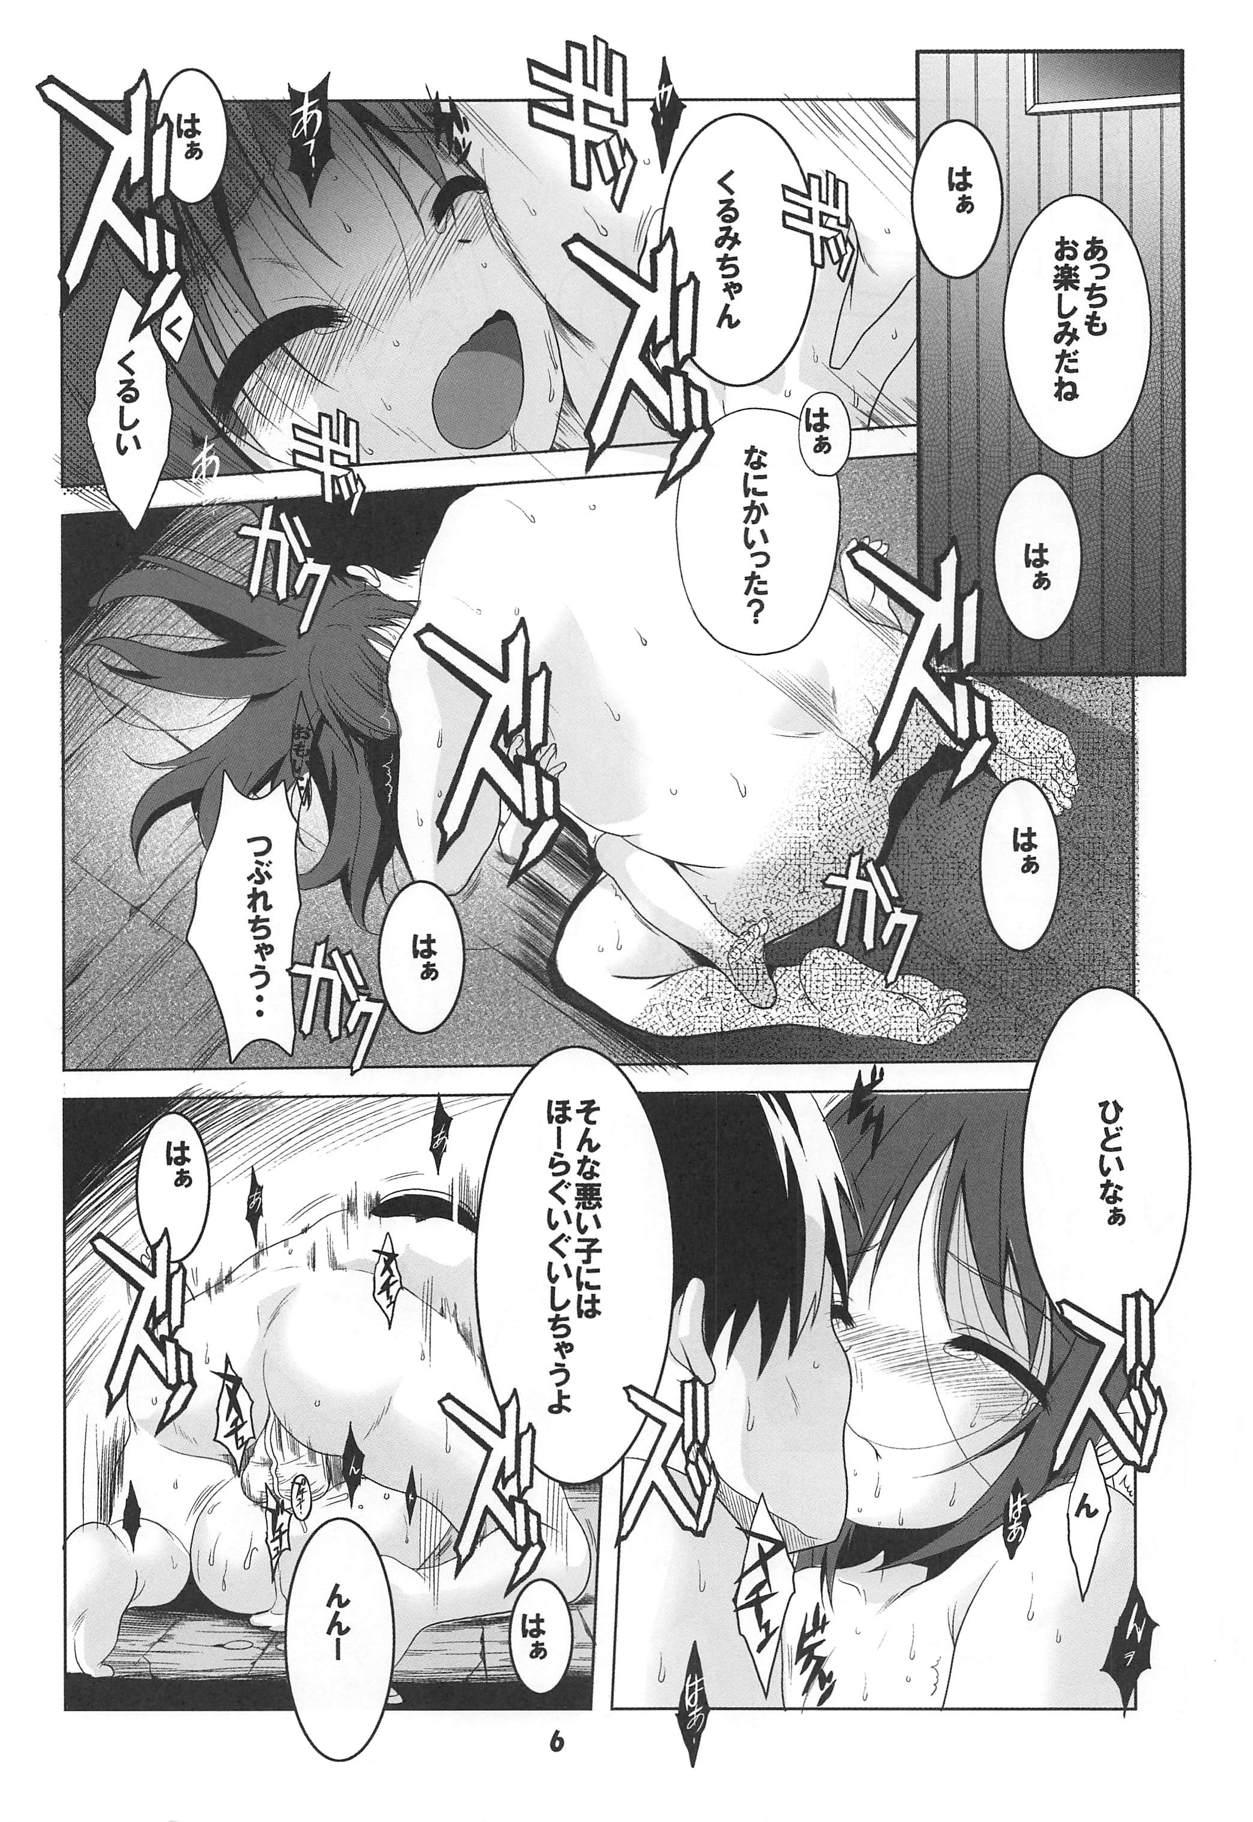 Clitoris Tenshi to 3P! ADVANCE - Tenshi no 3p Nurugel - Page 5